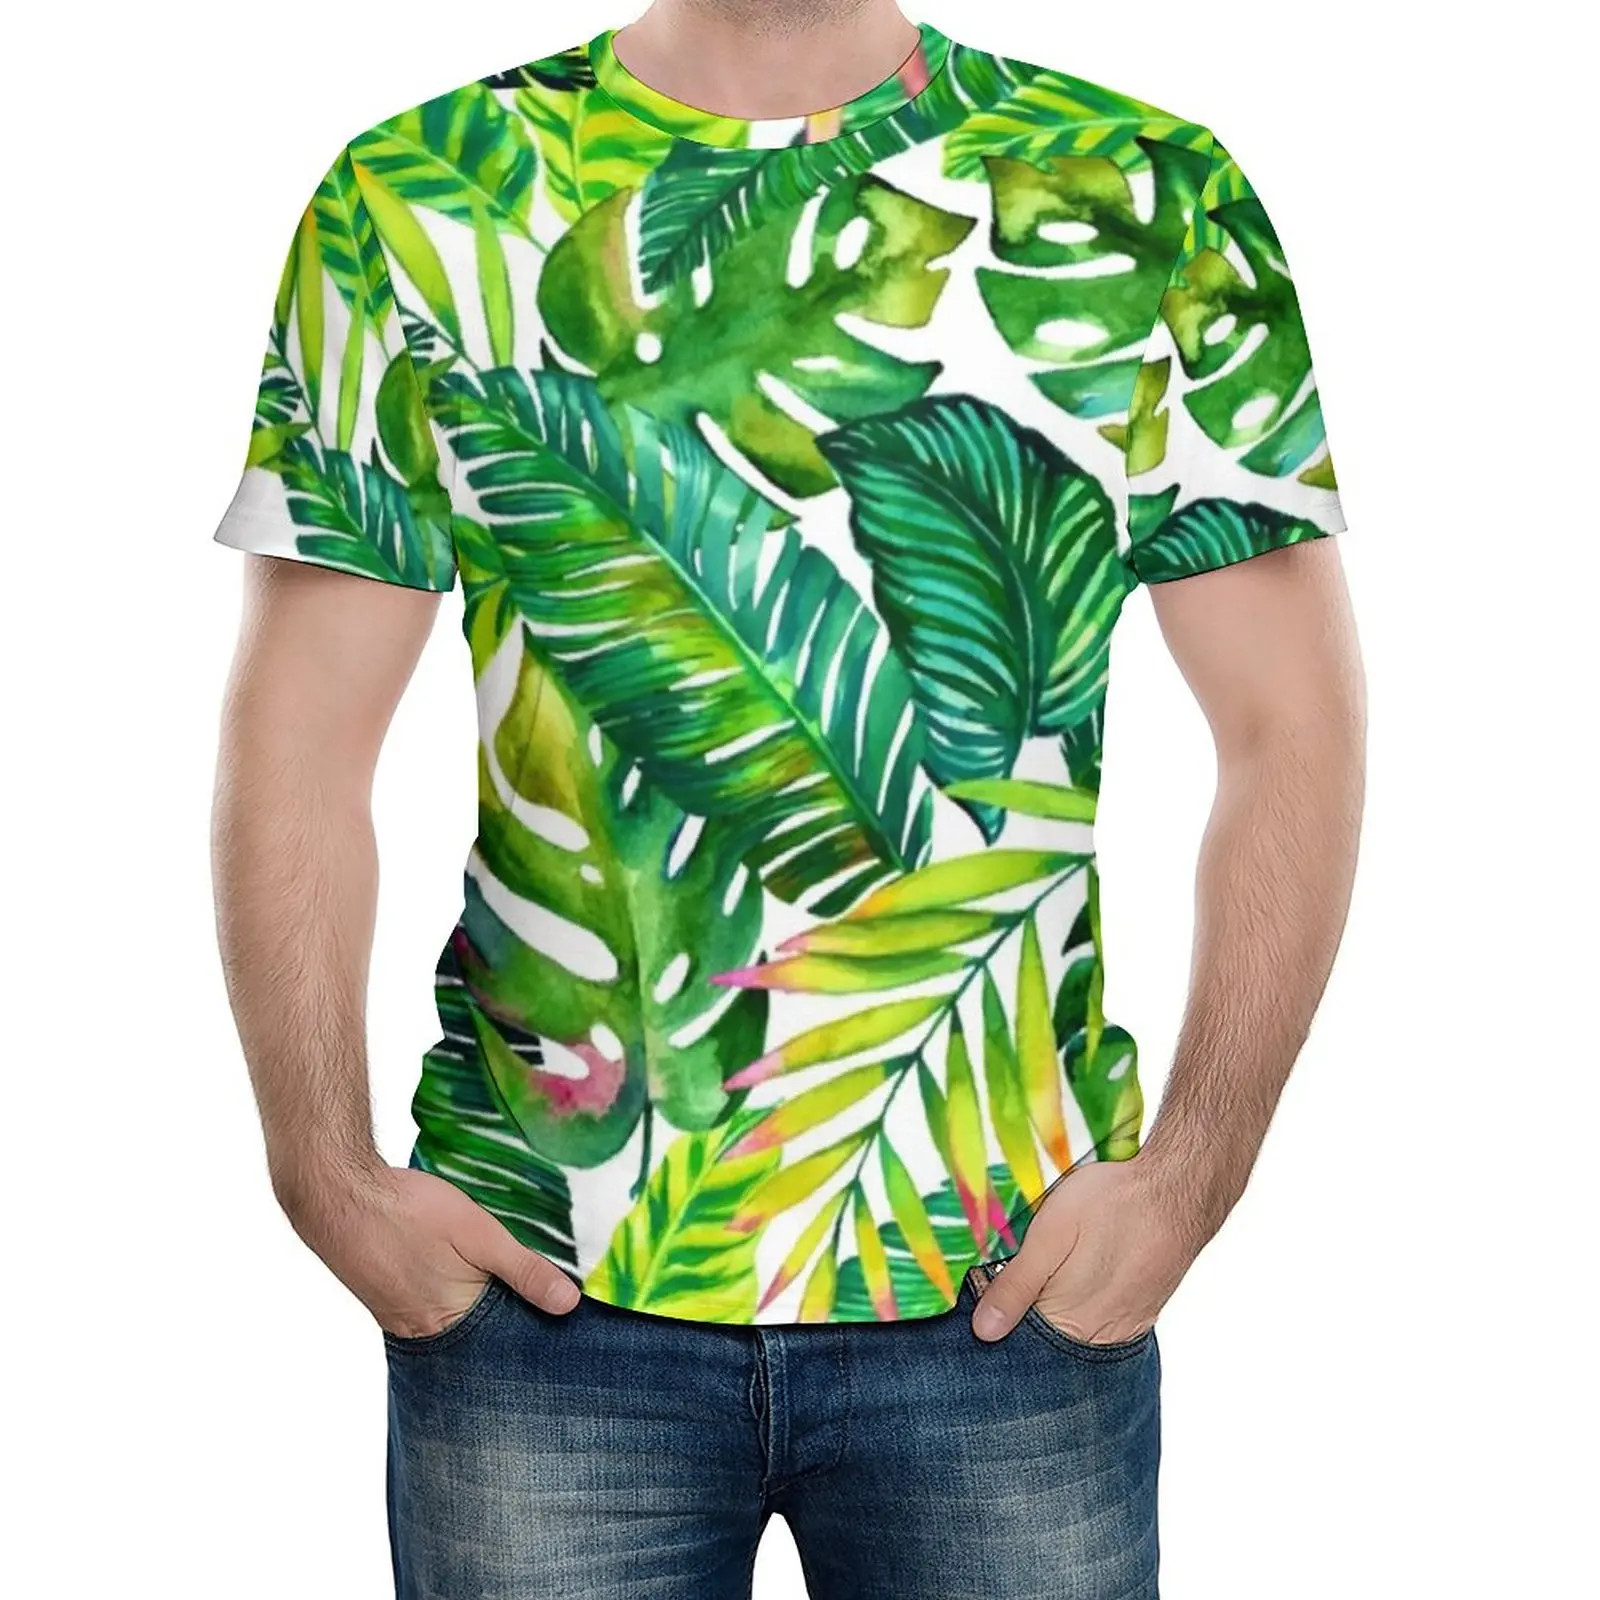 

Тропический принт футболка банановые листья мужские популярные футболки Летние пользовательские футболки с коротким рукавом Повседневная одежда большого размера подарок